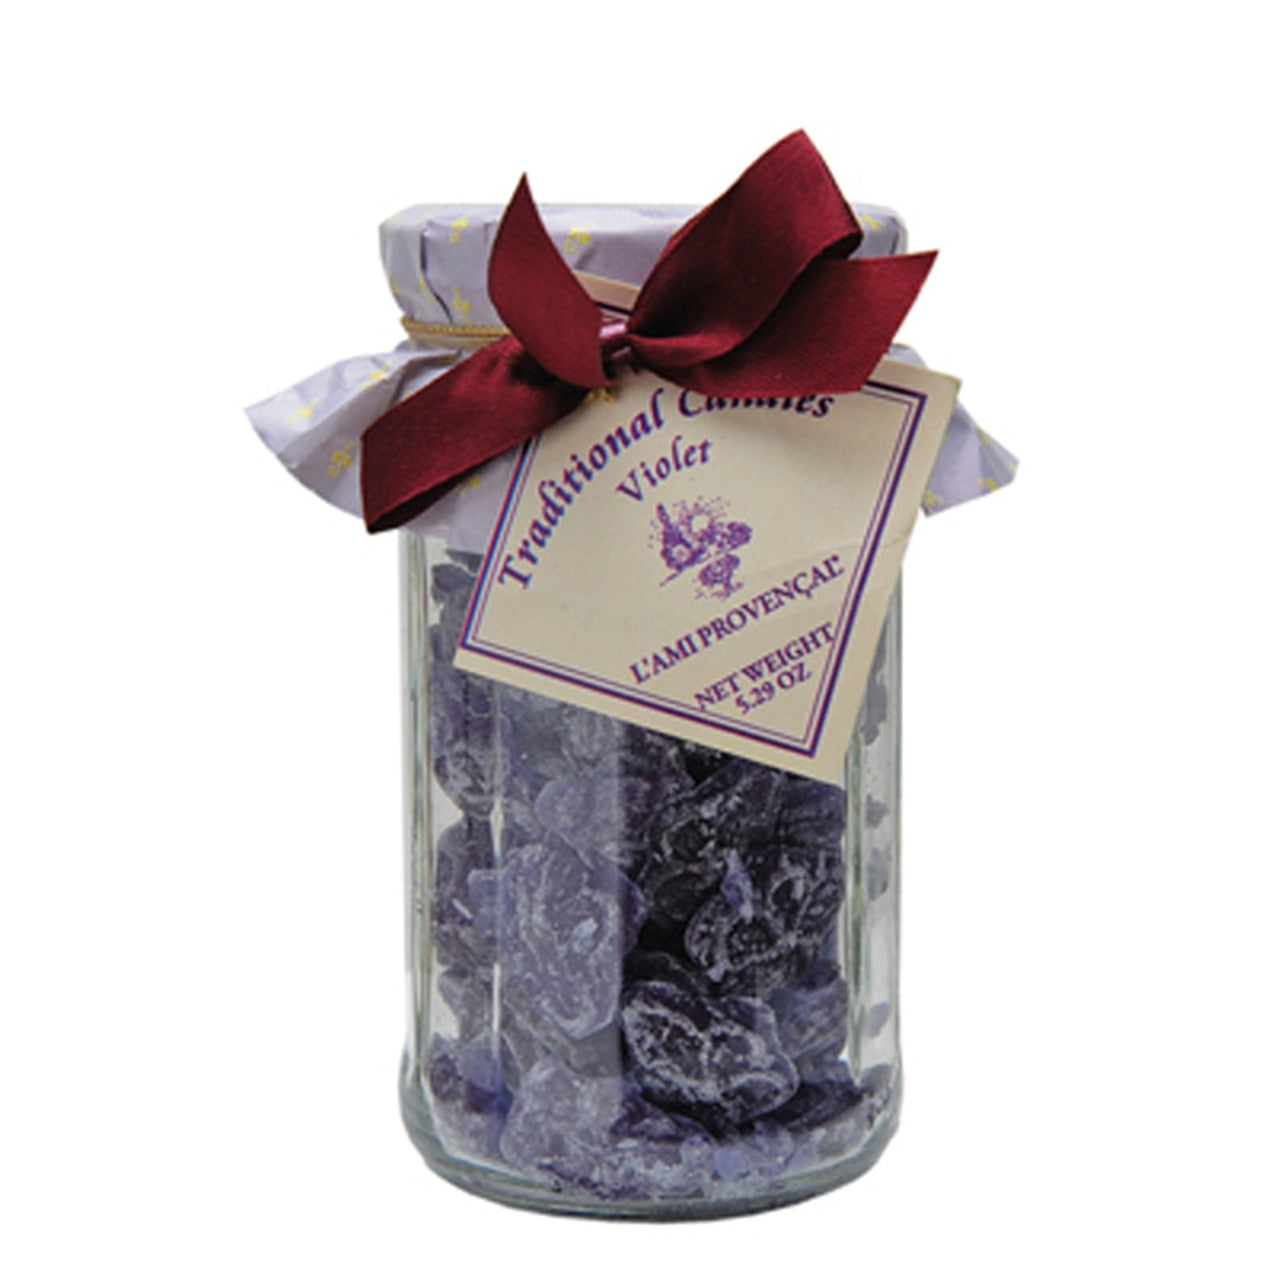 L'Ami Provencal Violet Candies